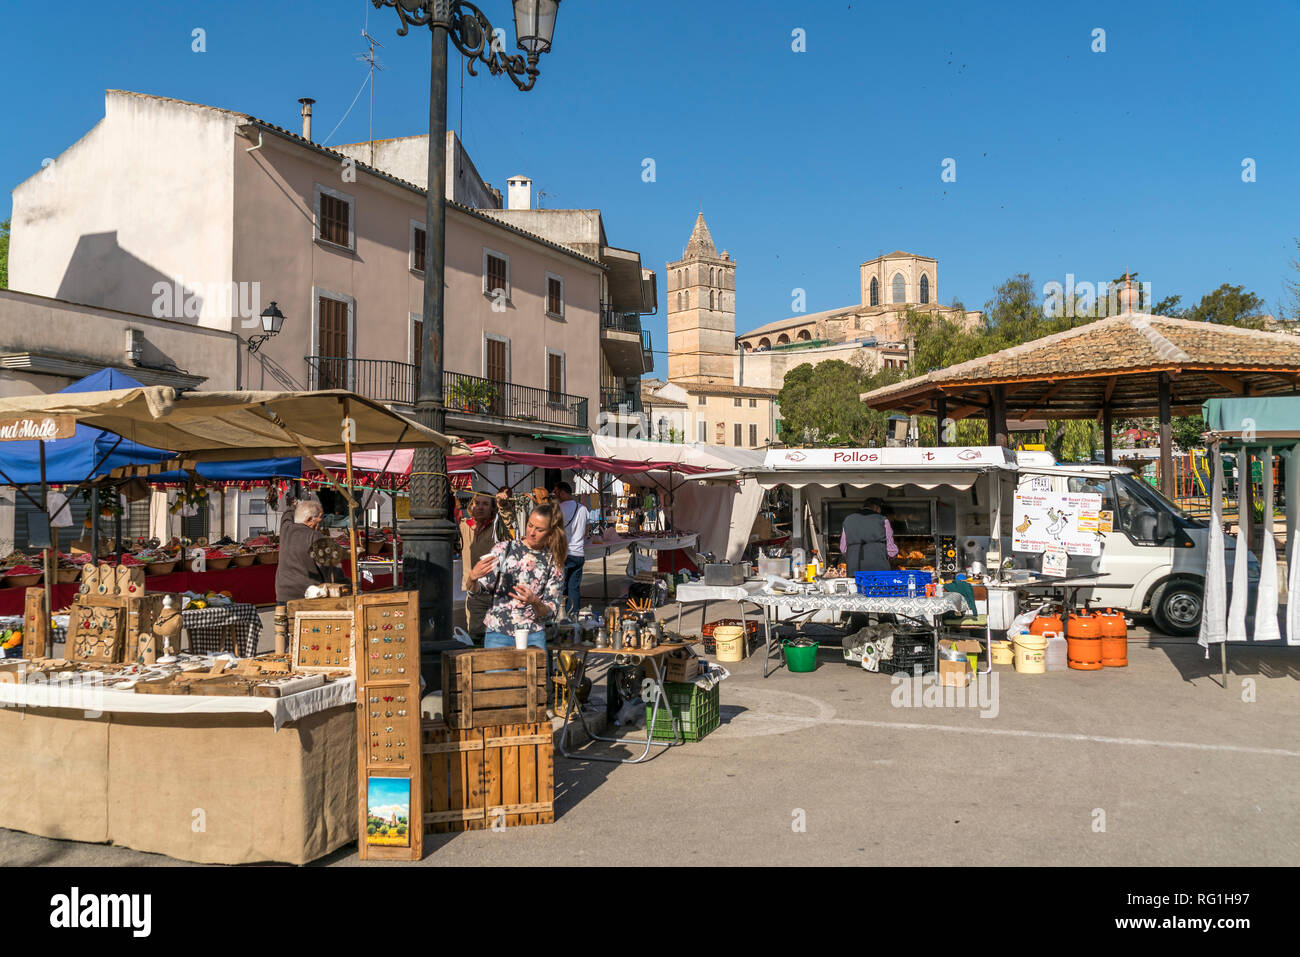 Markt in Sineu, Mallorca, Balearen, Spanien | Sineu mercato, Maiorca, isole Baleari, Spagna, Foto Stock